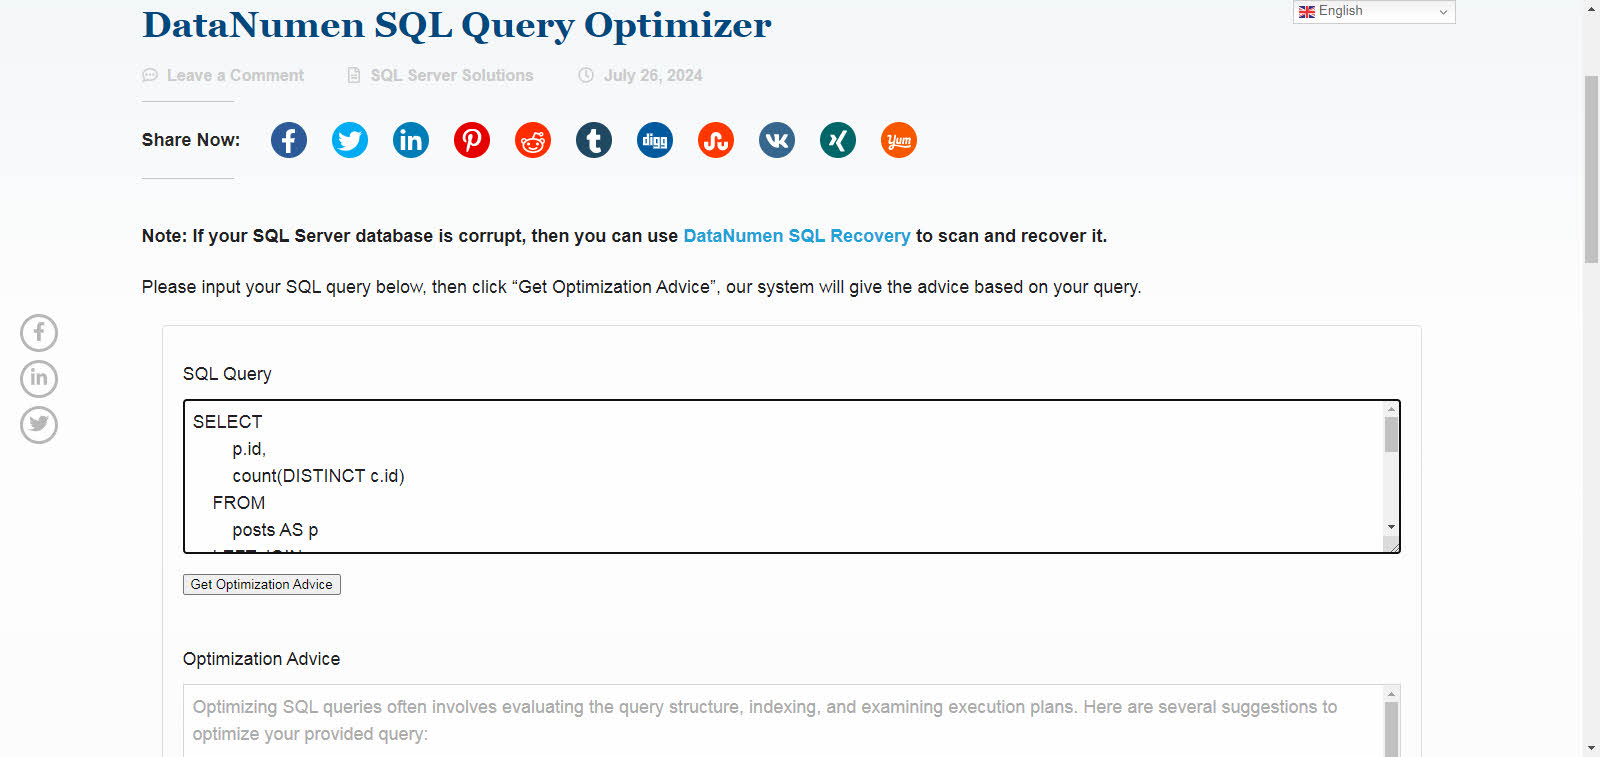 DataNumen SQL Query Optimizer